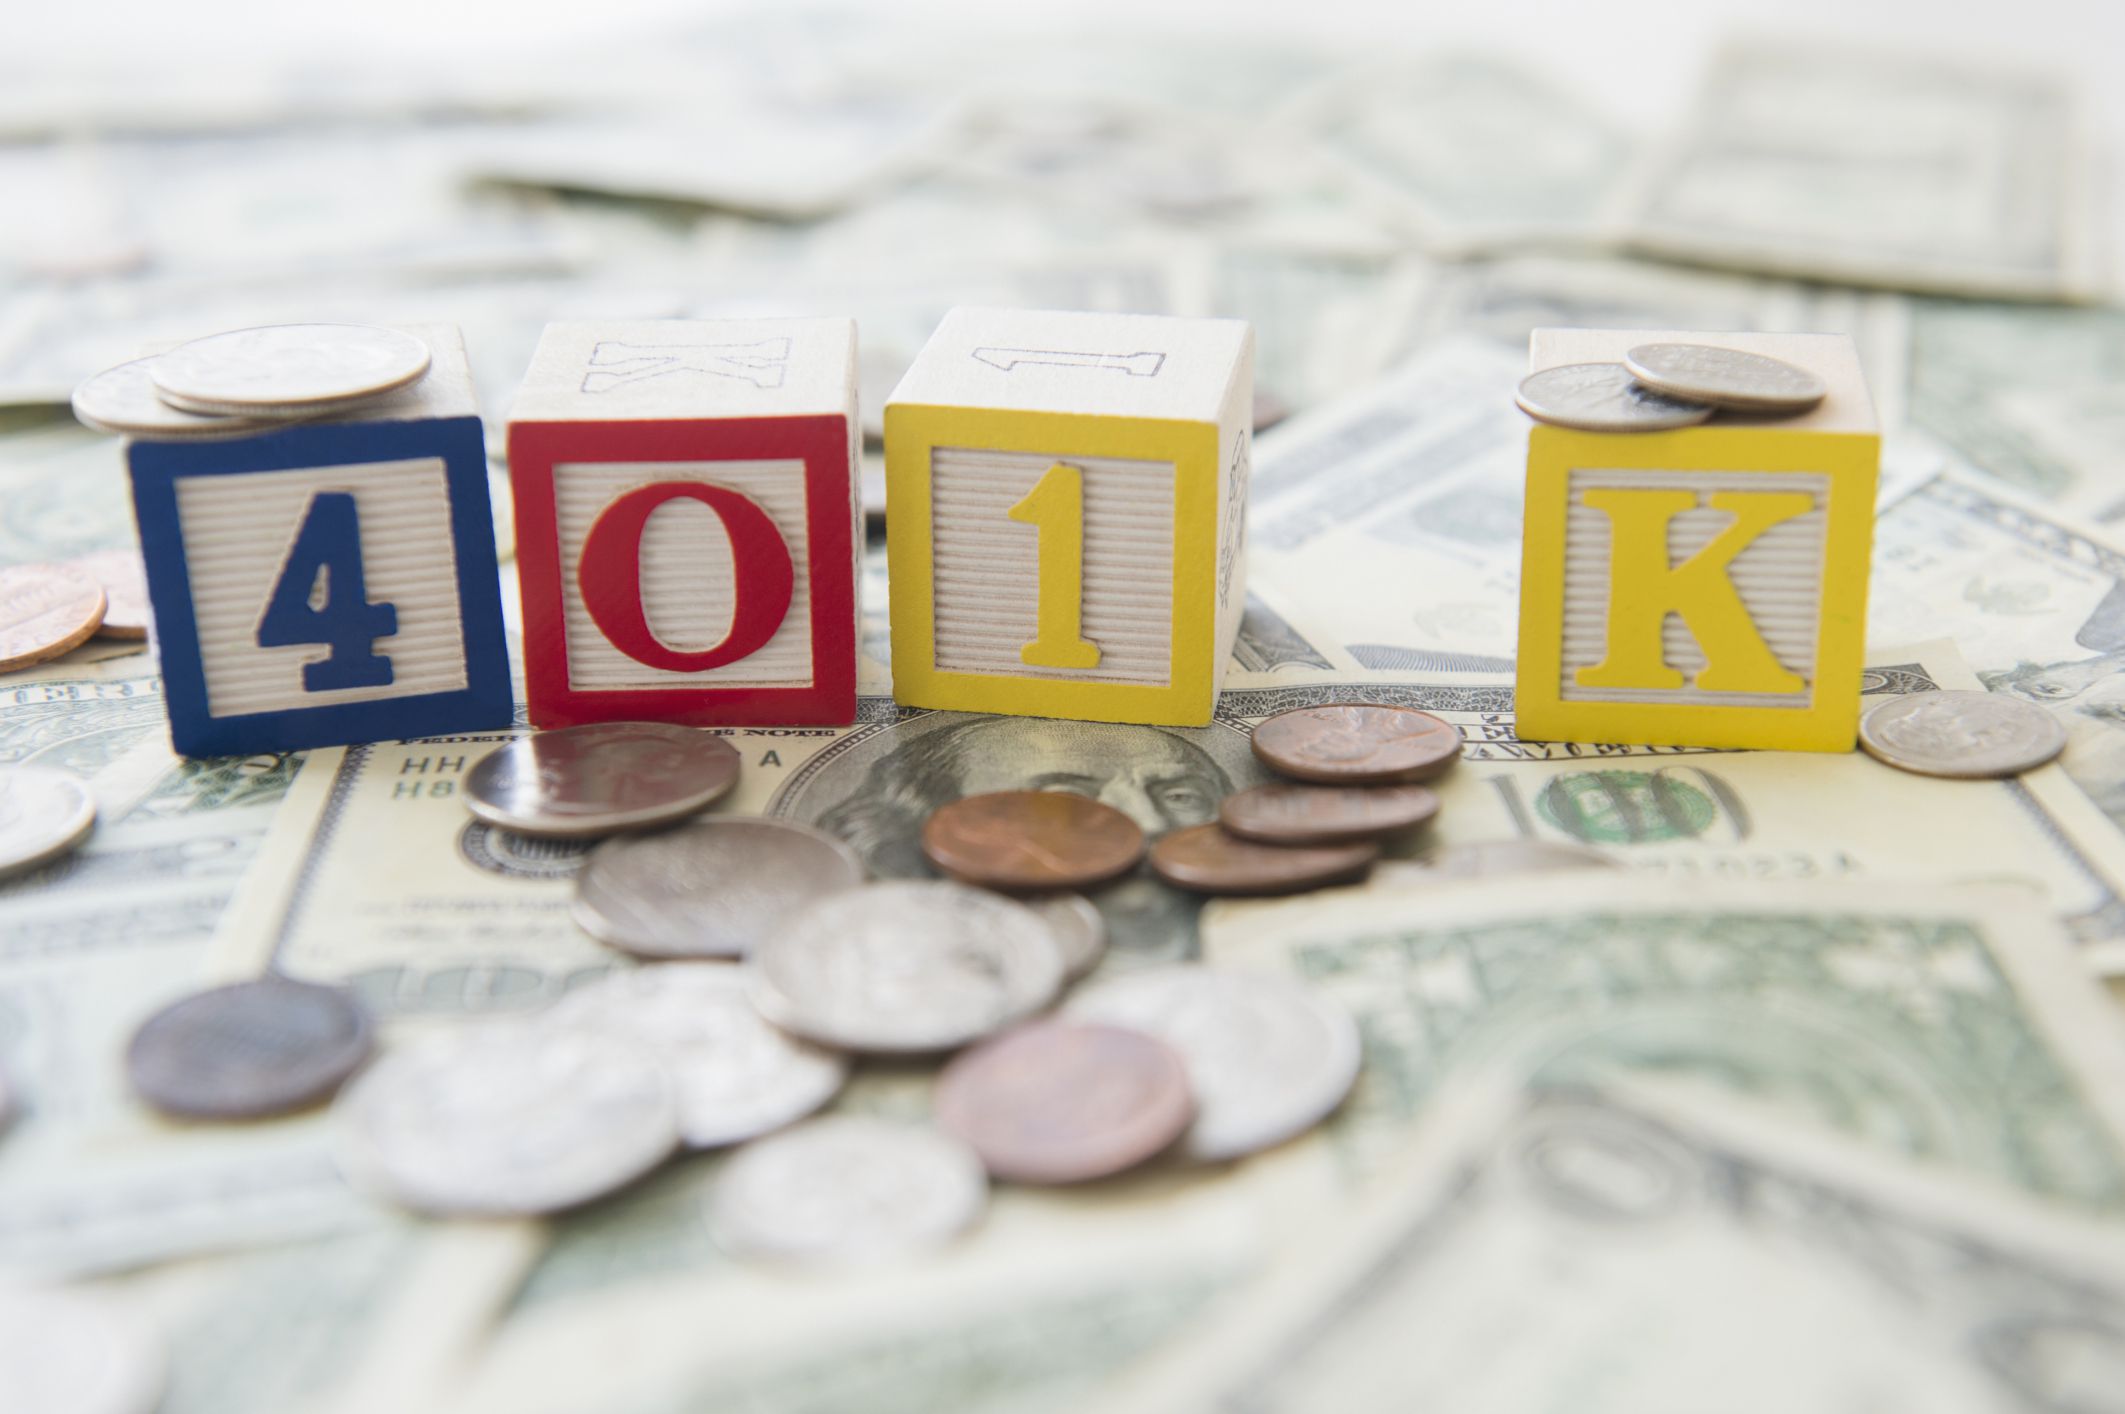 Tips for 401k Investing